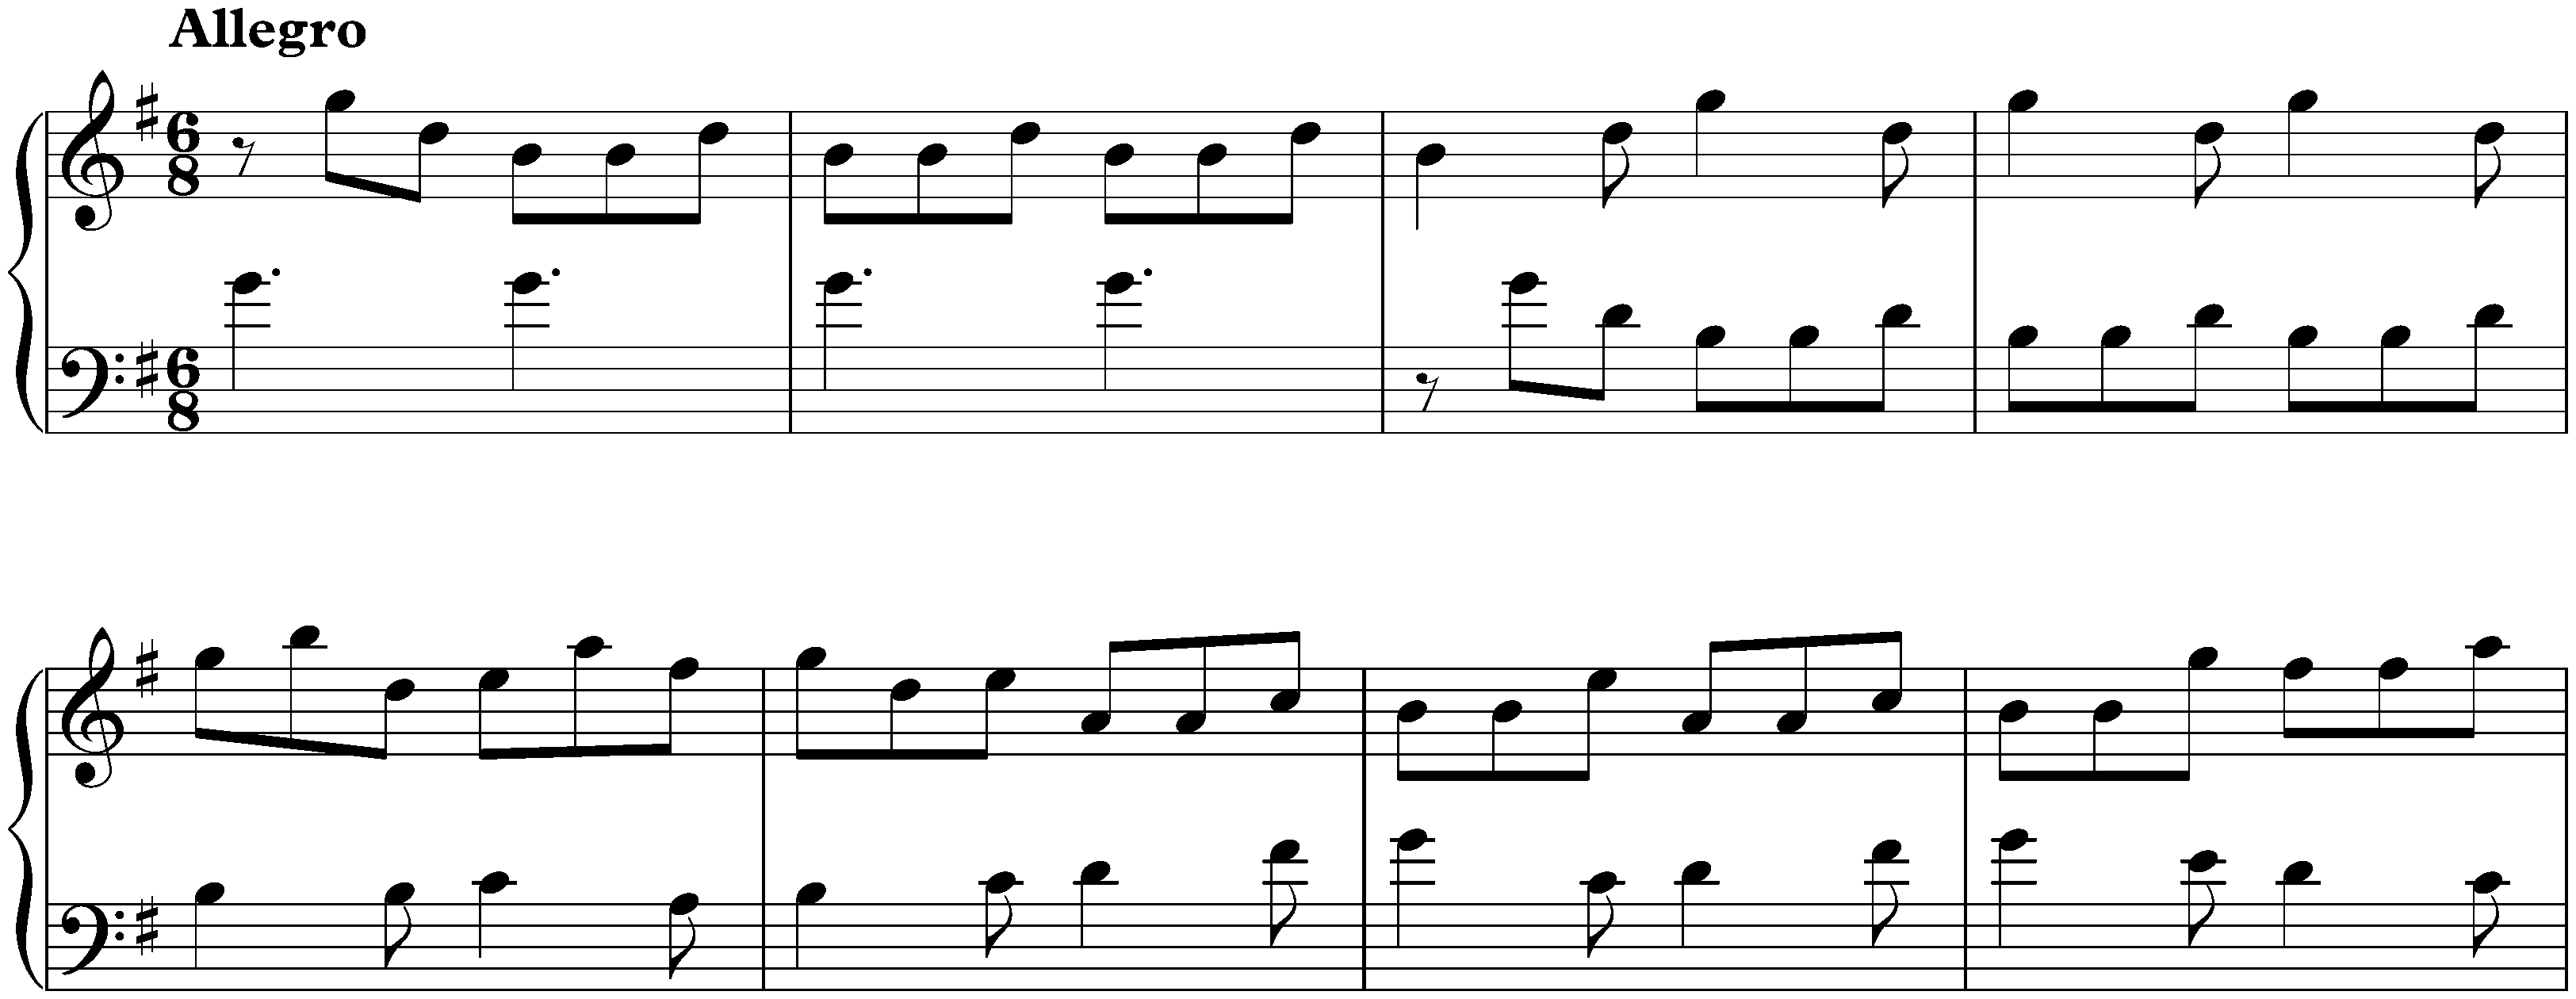 Sonata in G major, K. 375